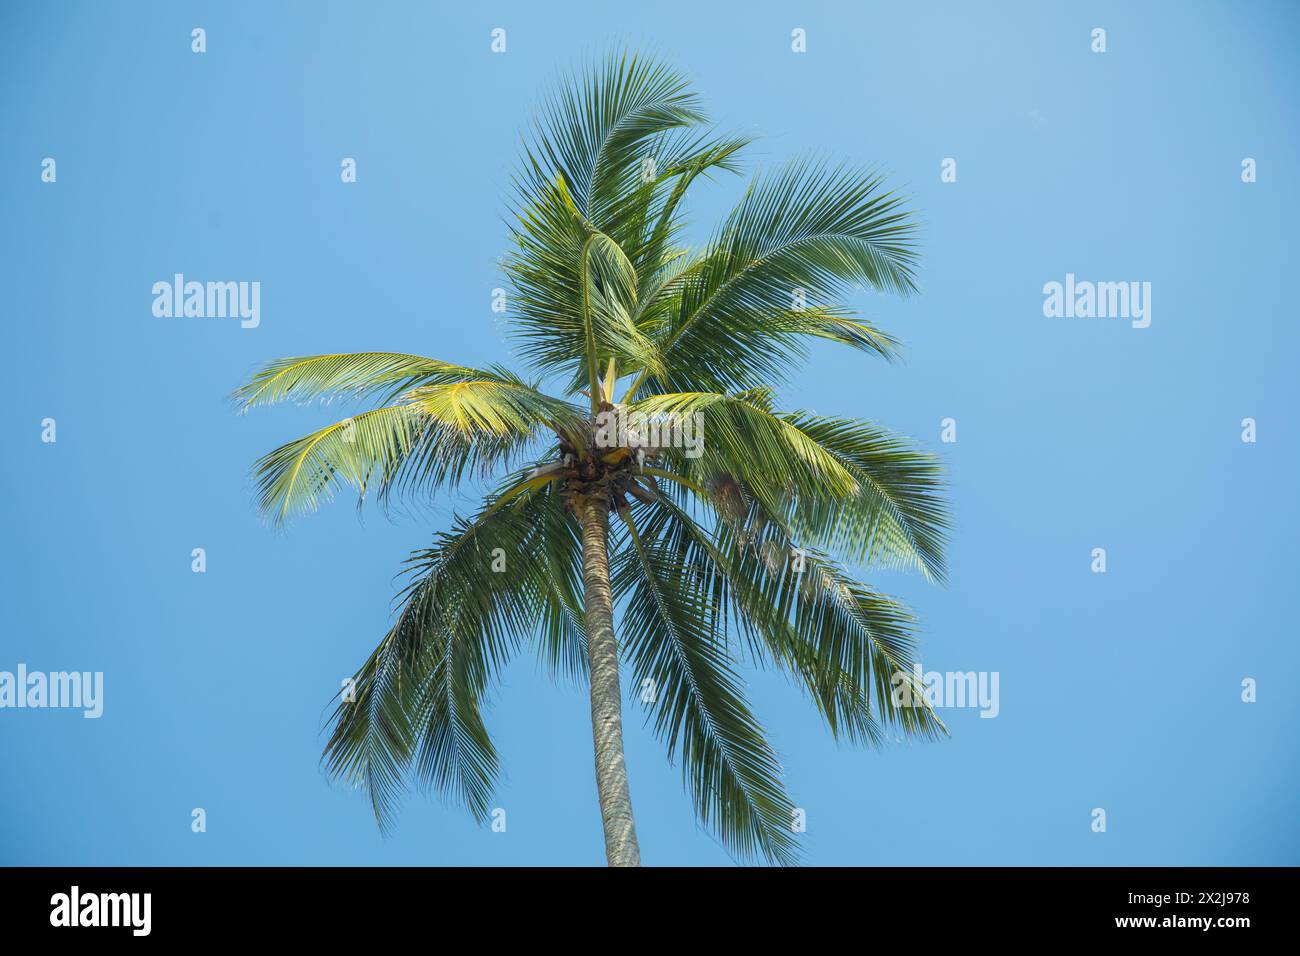 Sagome di una splendida palma contro il cielo blu in un paese caldo. Foto Stock